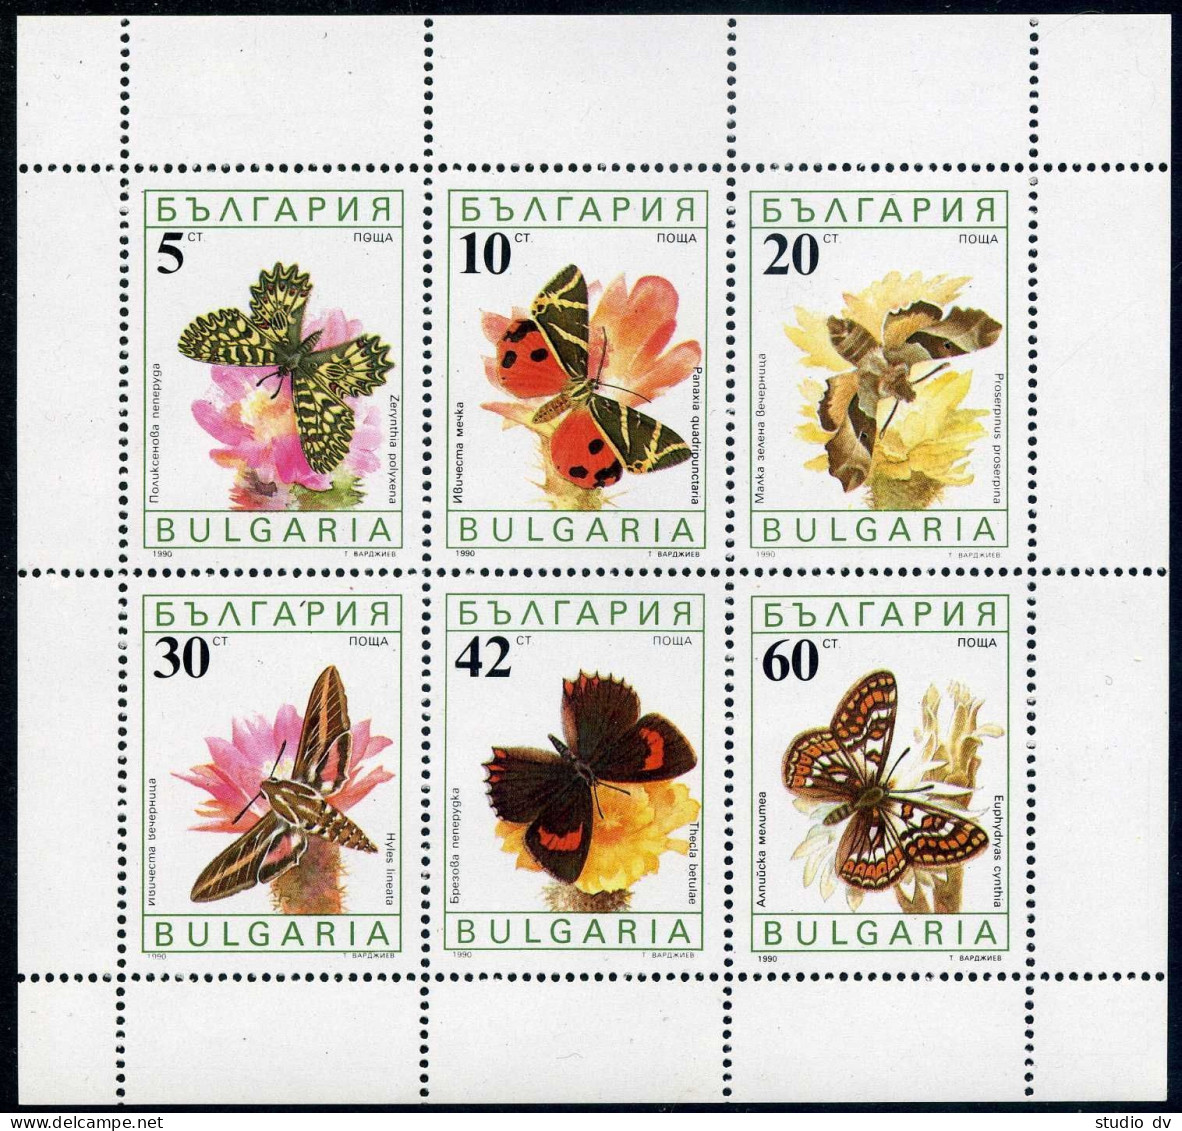 Bulgaria 3556a Sheet,MNH.Michel 3852-3857 Klb. Butterflies And Flowers 1990. - Ongebruikt